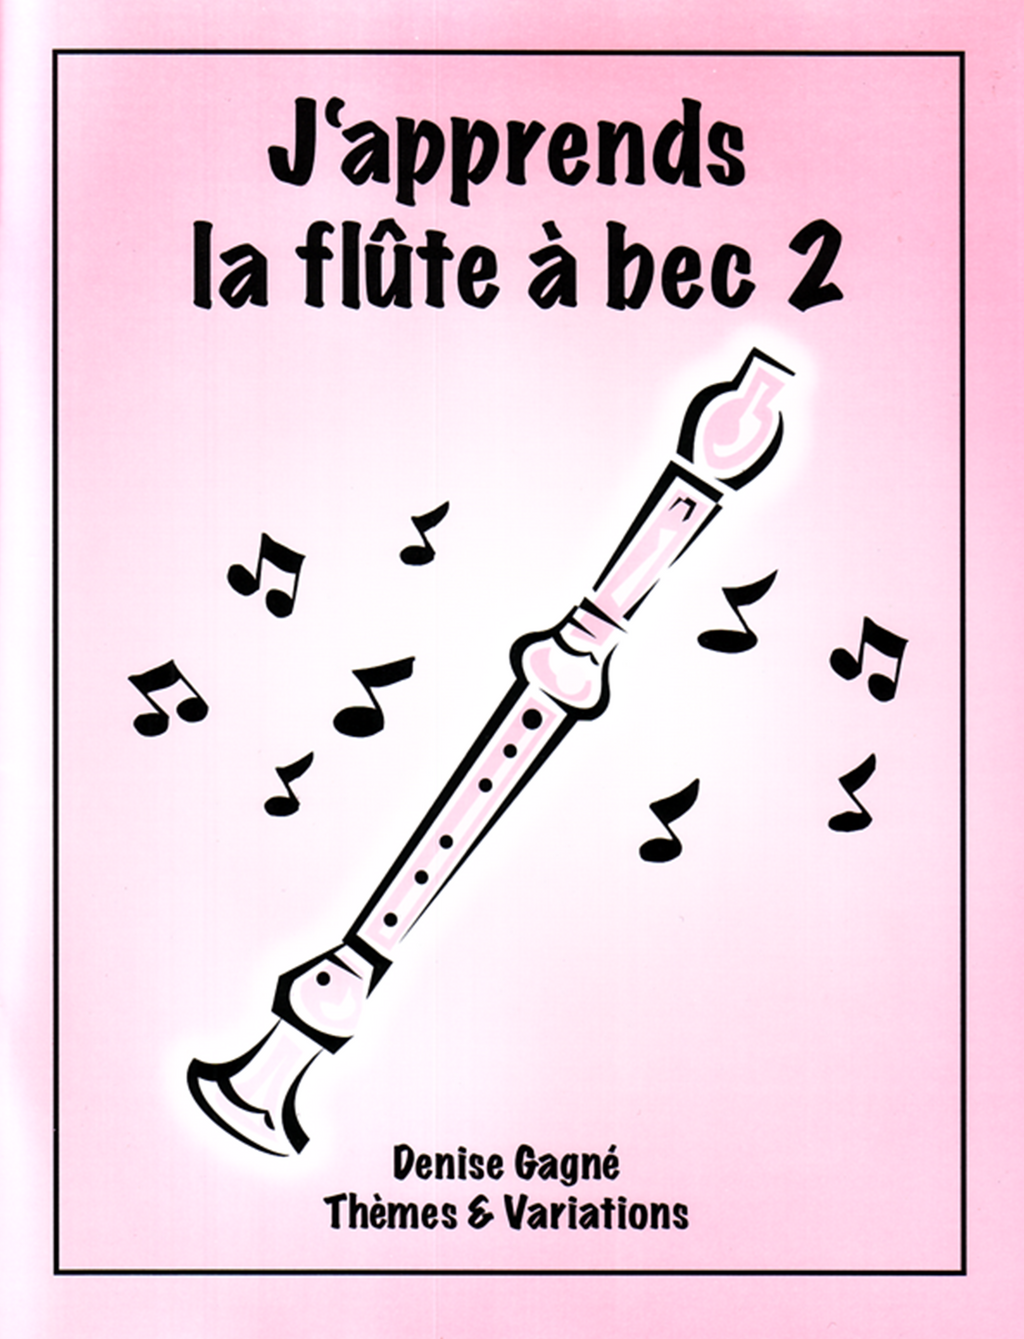 Vaguelly 2 Pièces Flûte à Bec Soprano Enregistreurs Pour Apprendre